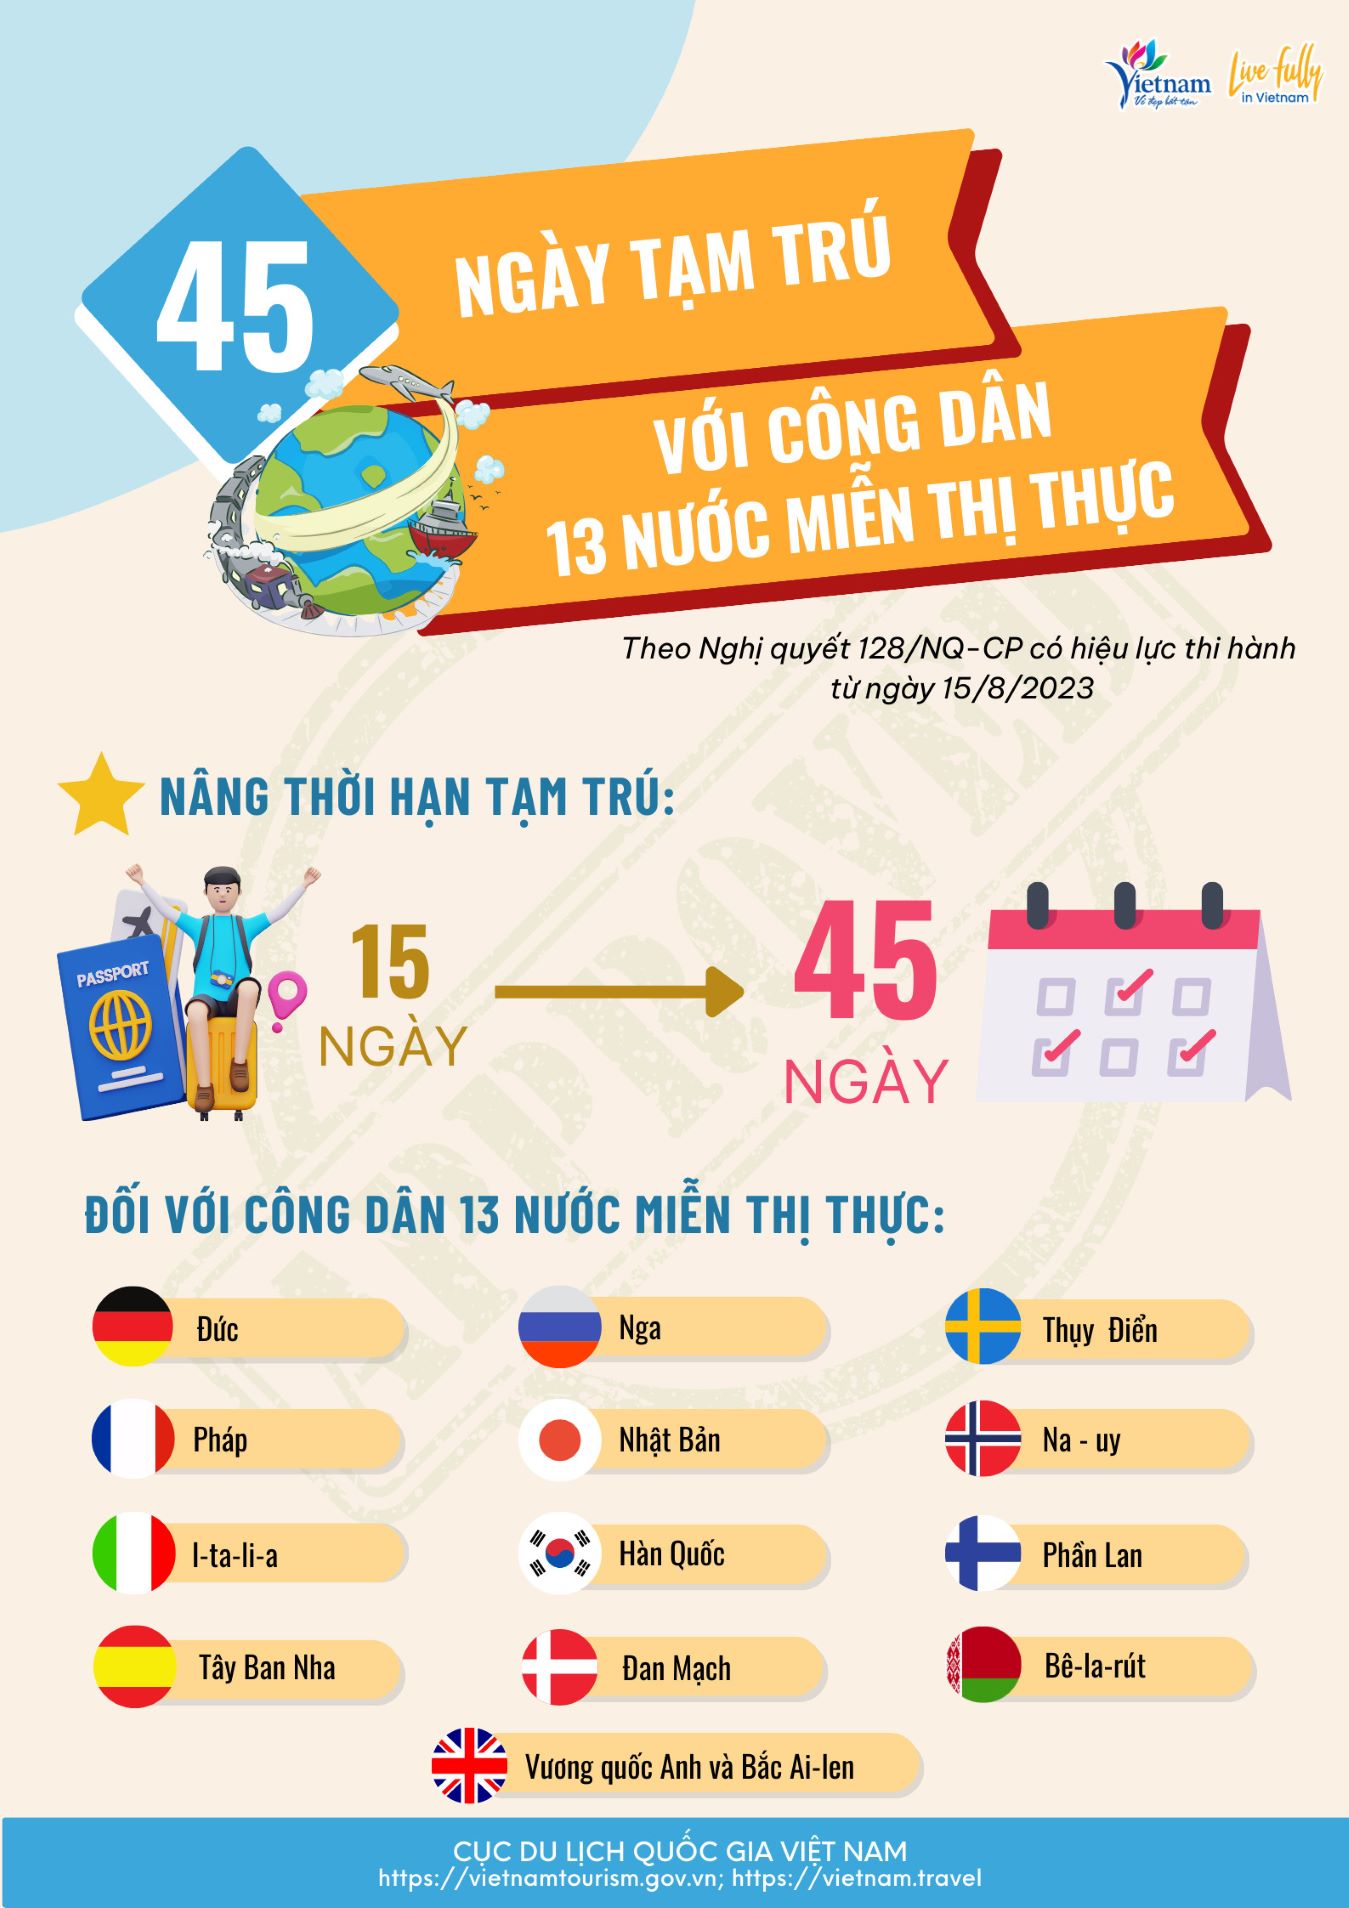 [Infographic] Nâng thời hạn tạm trú lên 45 ngày đối với công dân 13 nước được miễn thị thực